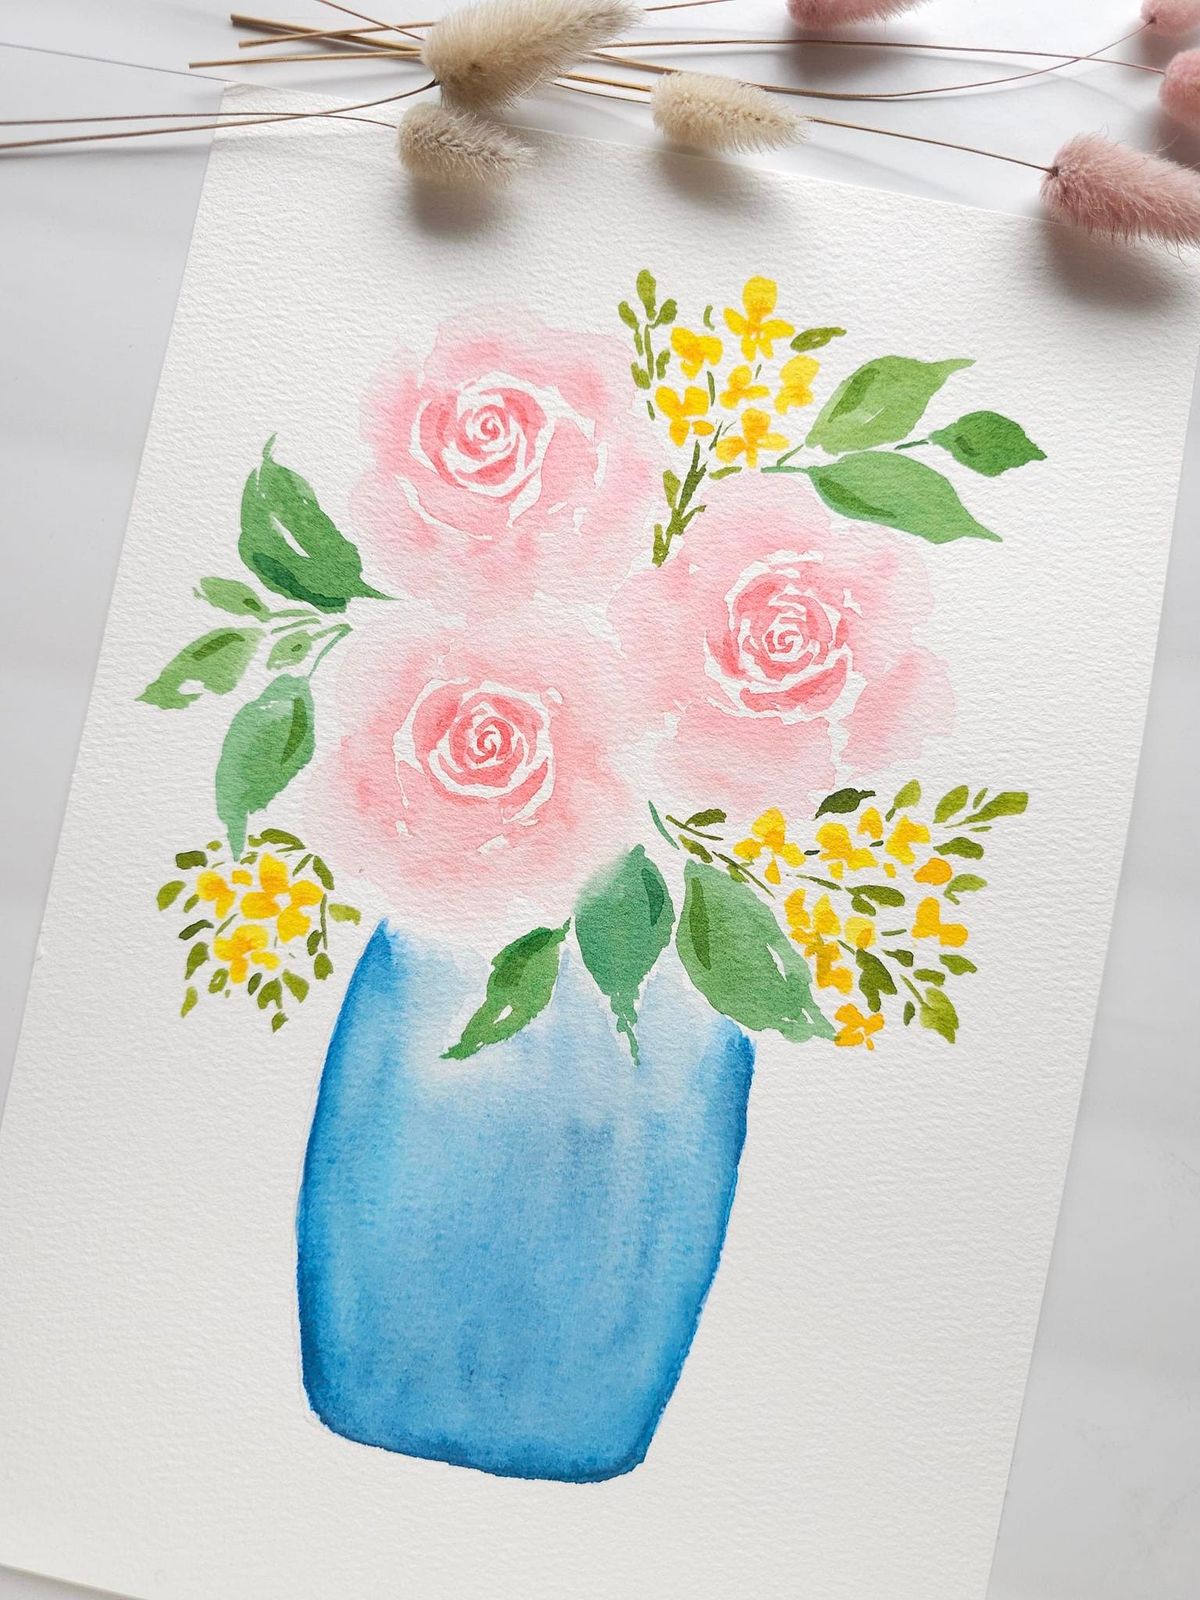 Loose Rose Watercolour Workshop